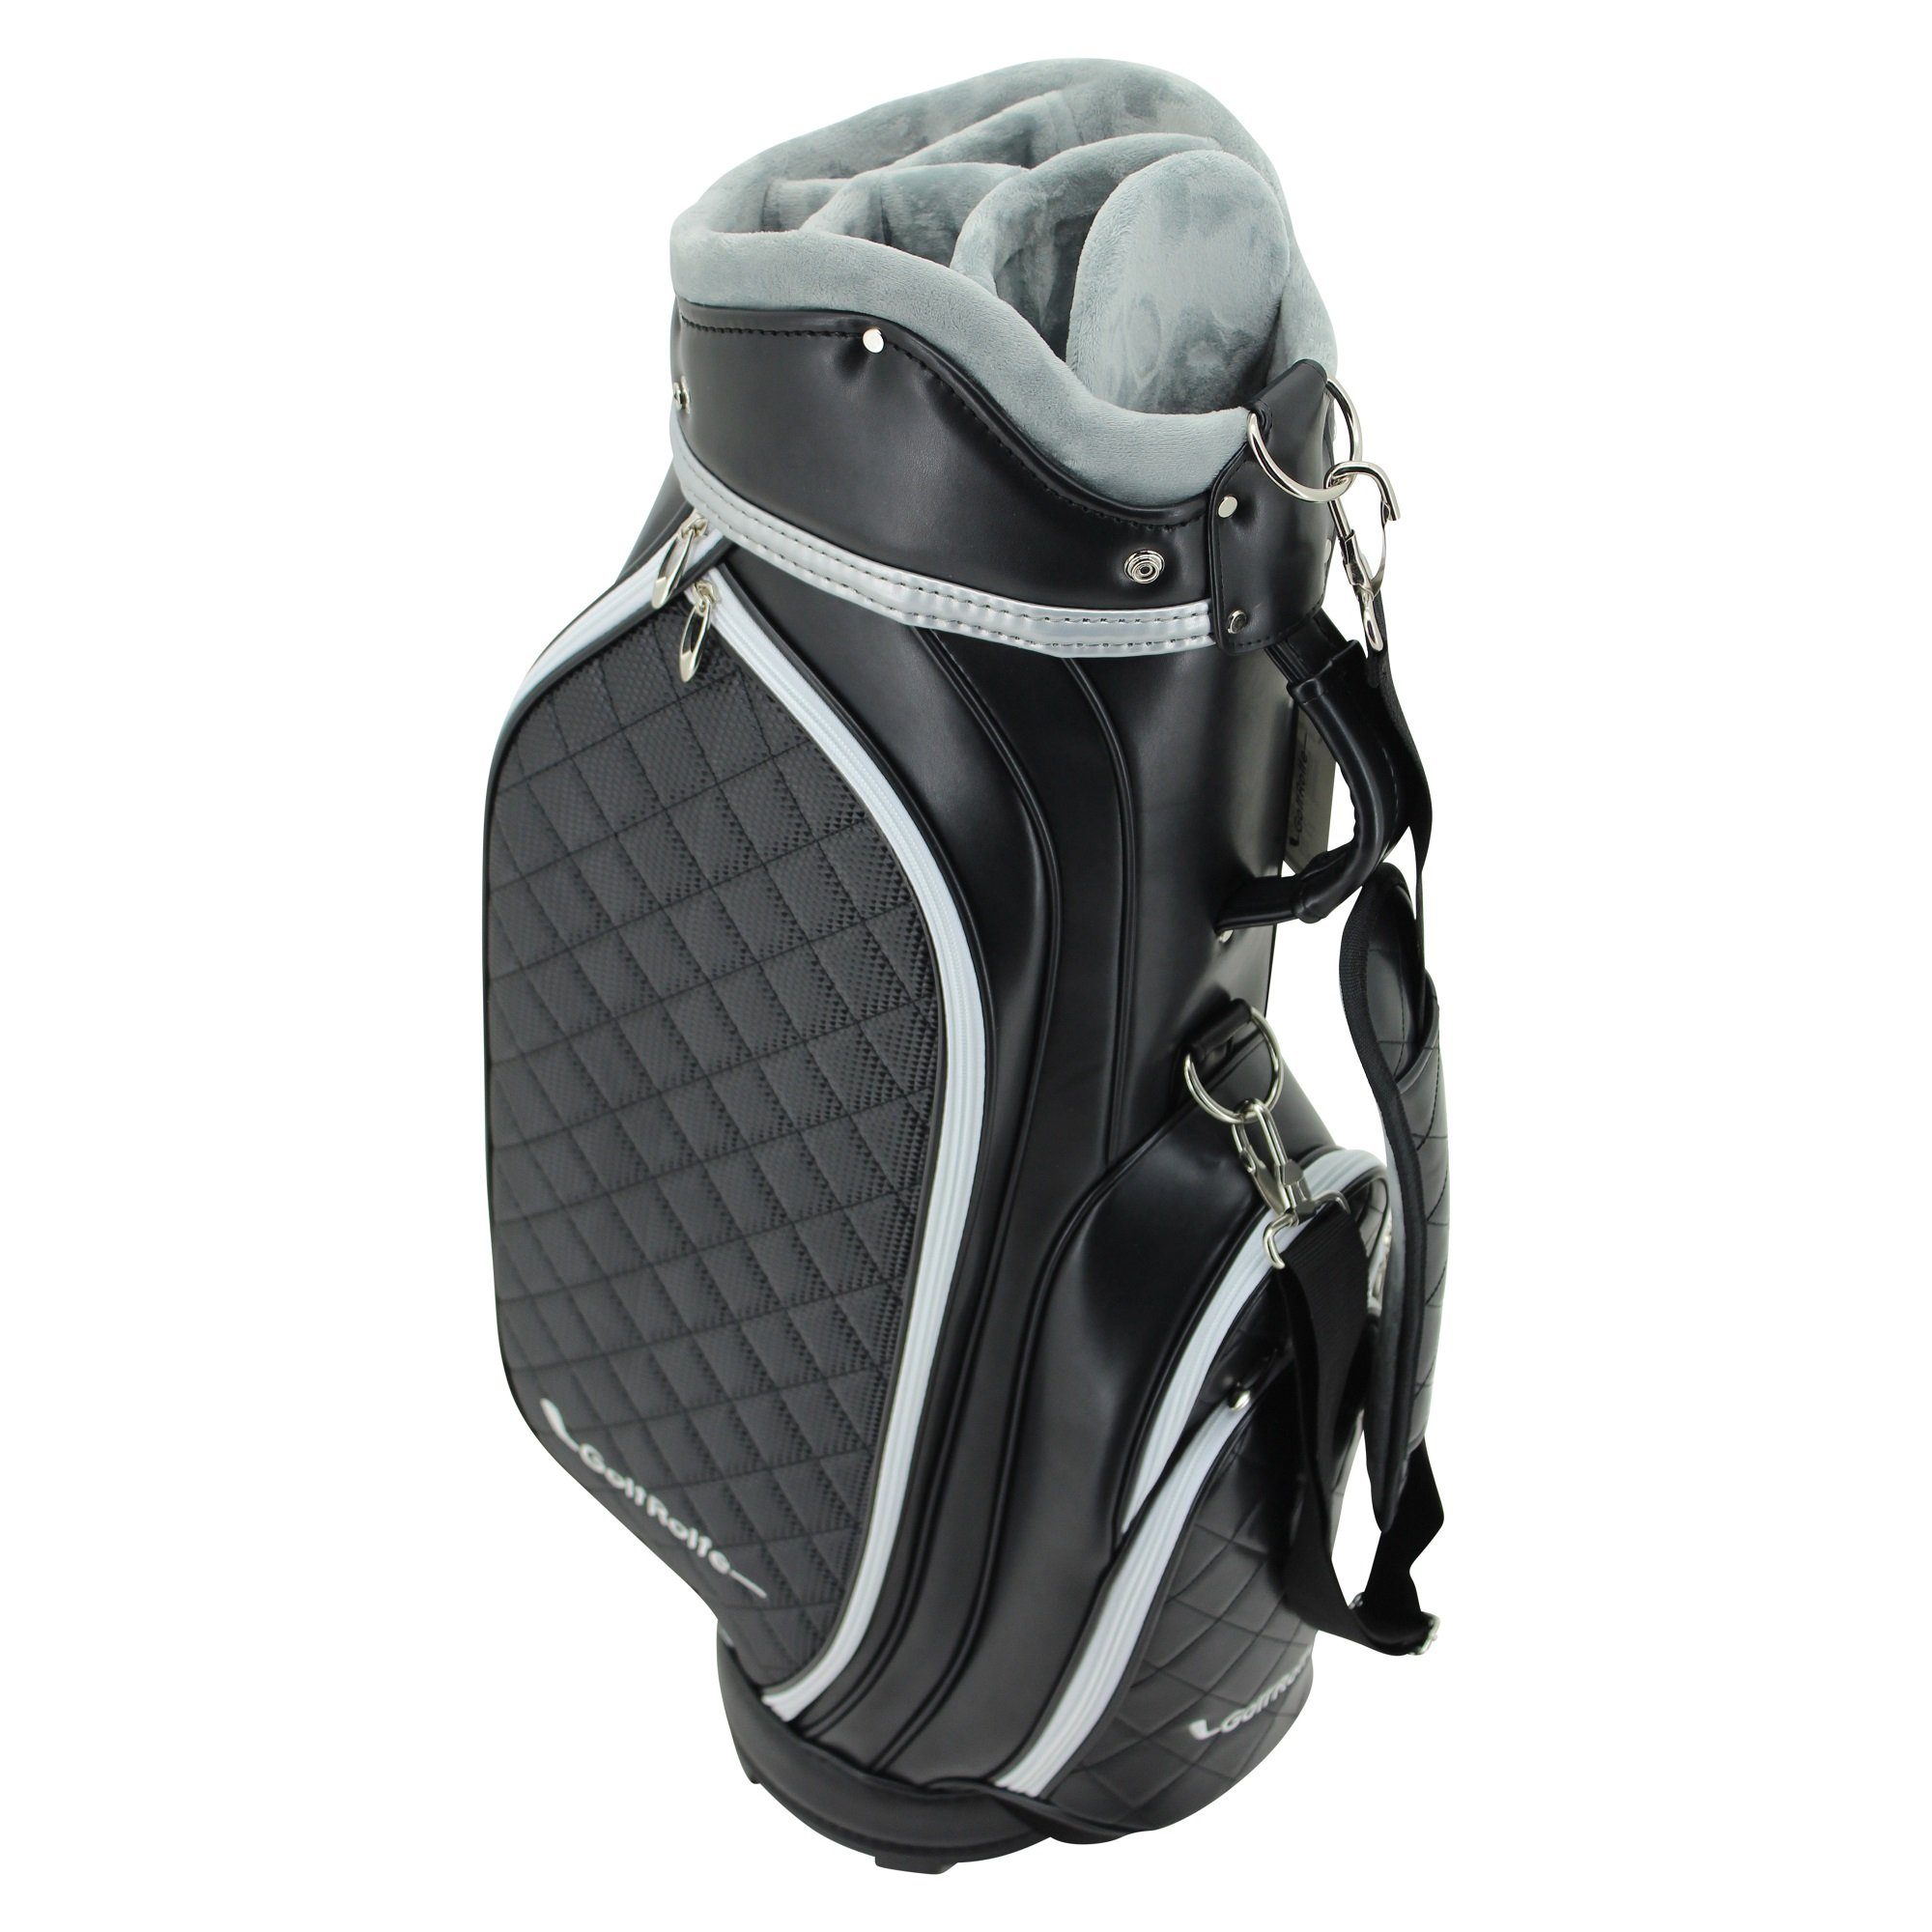 GolfRolfe Caddybag 14286 Golfballtasche Design GolfRolfe Golftasche - schwarz Golfbag